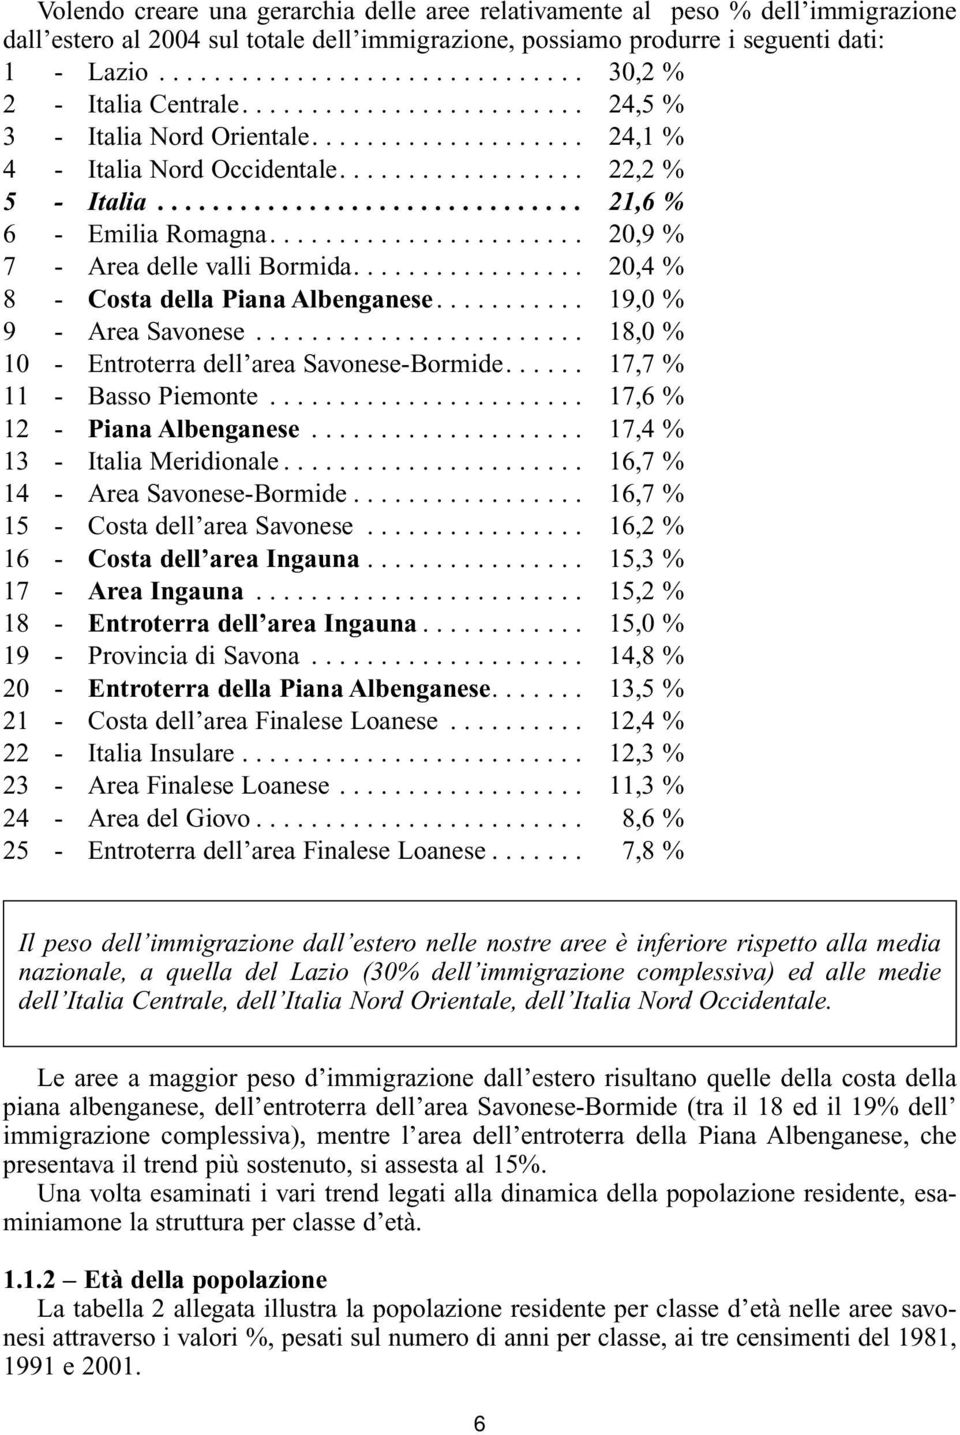 .............................. 21,6 % 6 - Emilia Romagna....................... 20,9 % 7 - Area delle valli Bormida................. 20,4 % 8 - Costa della Piana Albenganese........... 19,0 % 9 - Area Savonese.